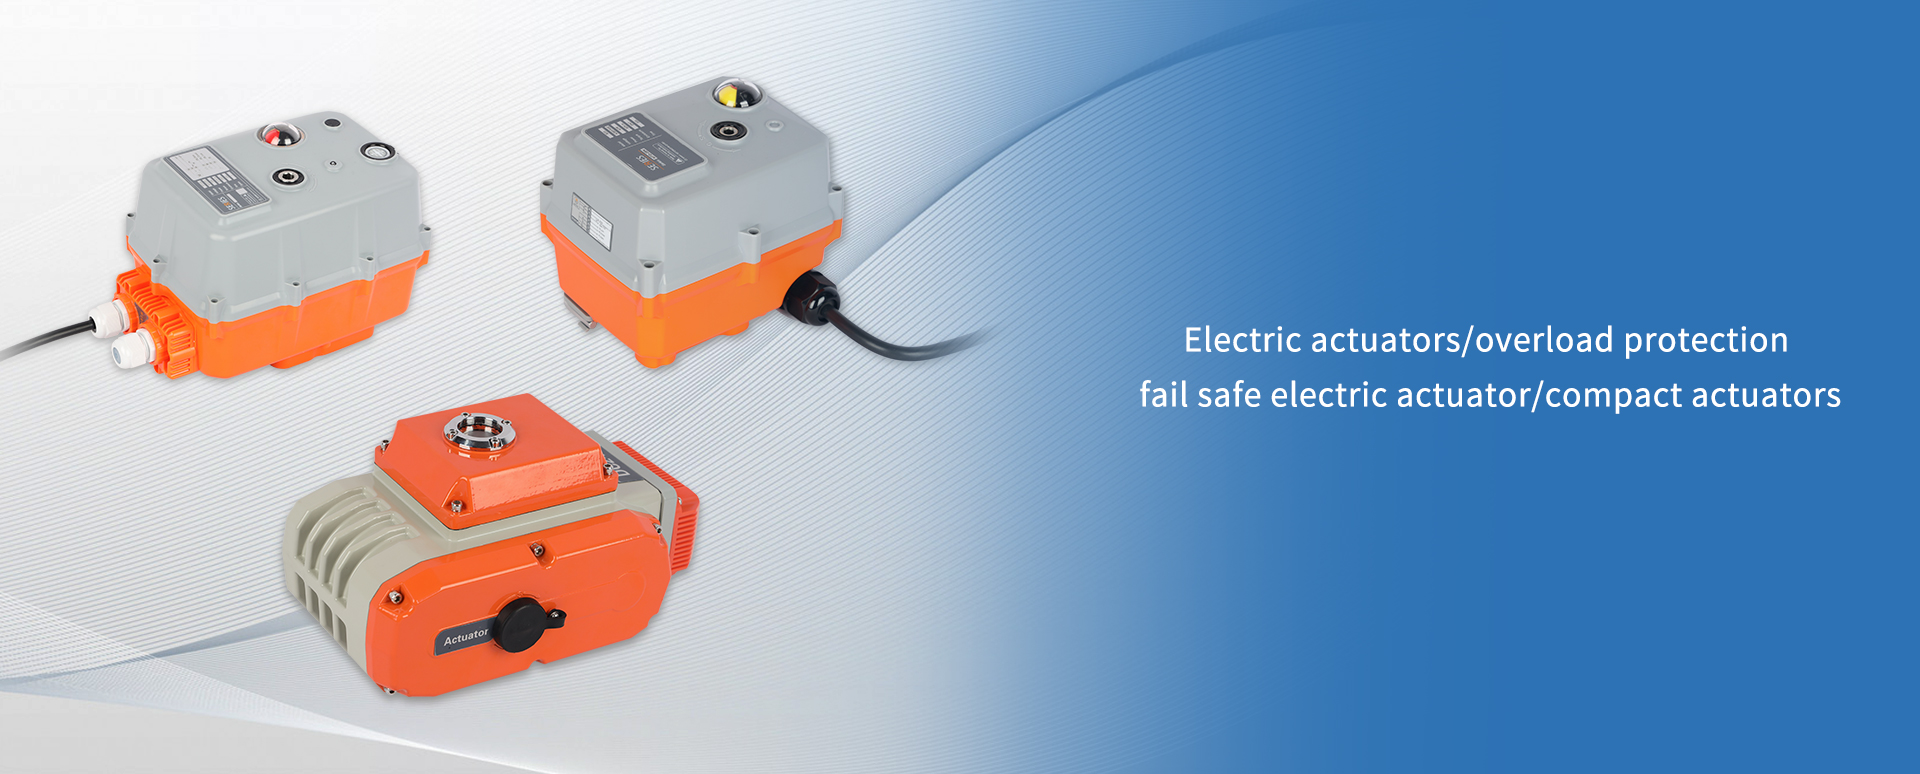 How electric actuator do fail safe?